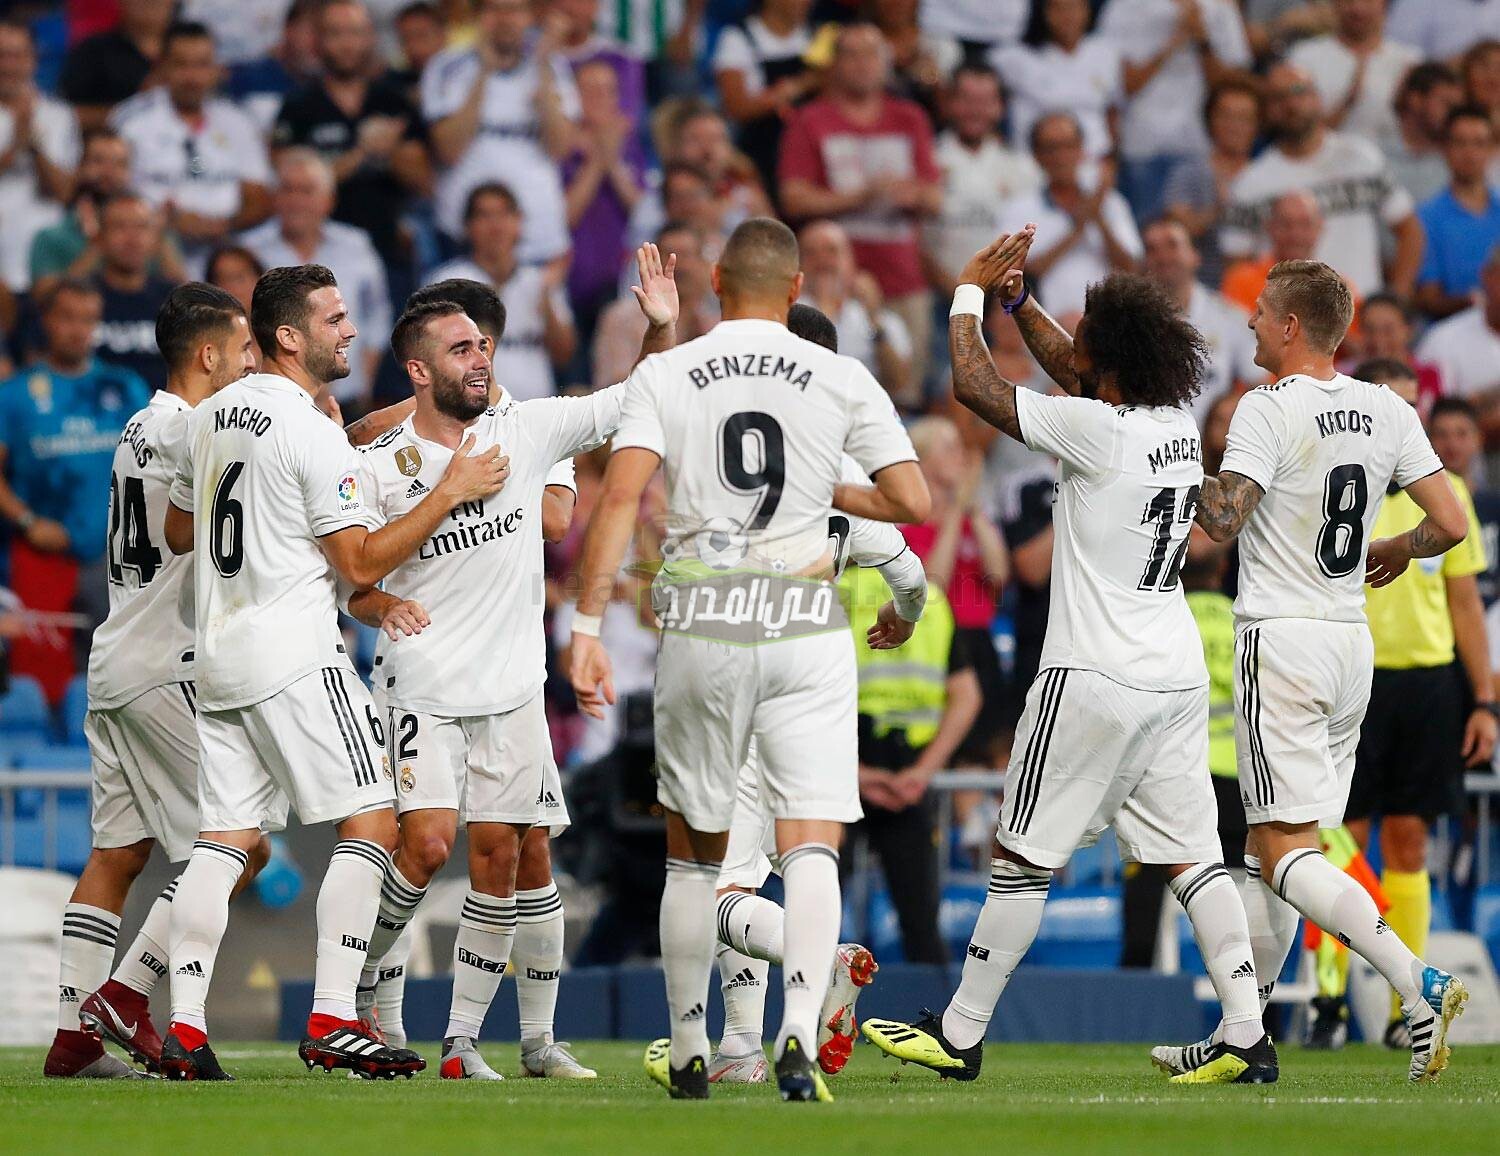 نتيجة مبارة ريال مدريد والافيس Real Madrid vs Alaves في الدوري الاسباني